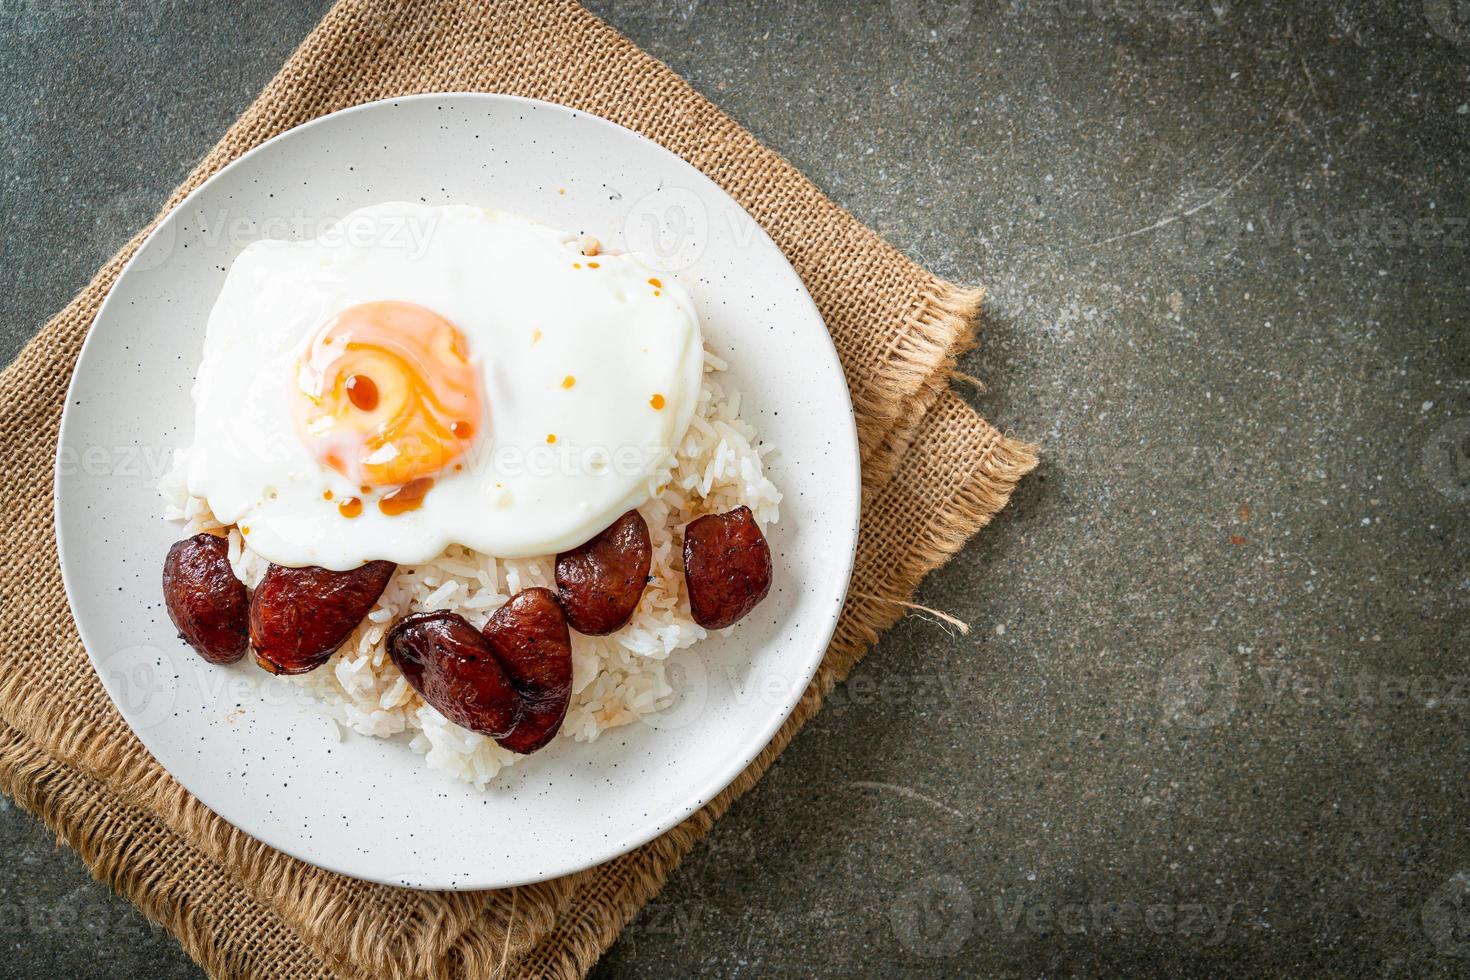 arroz com ovo frito e linguiça chinesa - comida caseira em estilo asiático foto